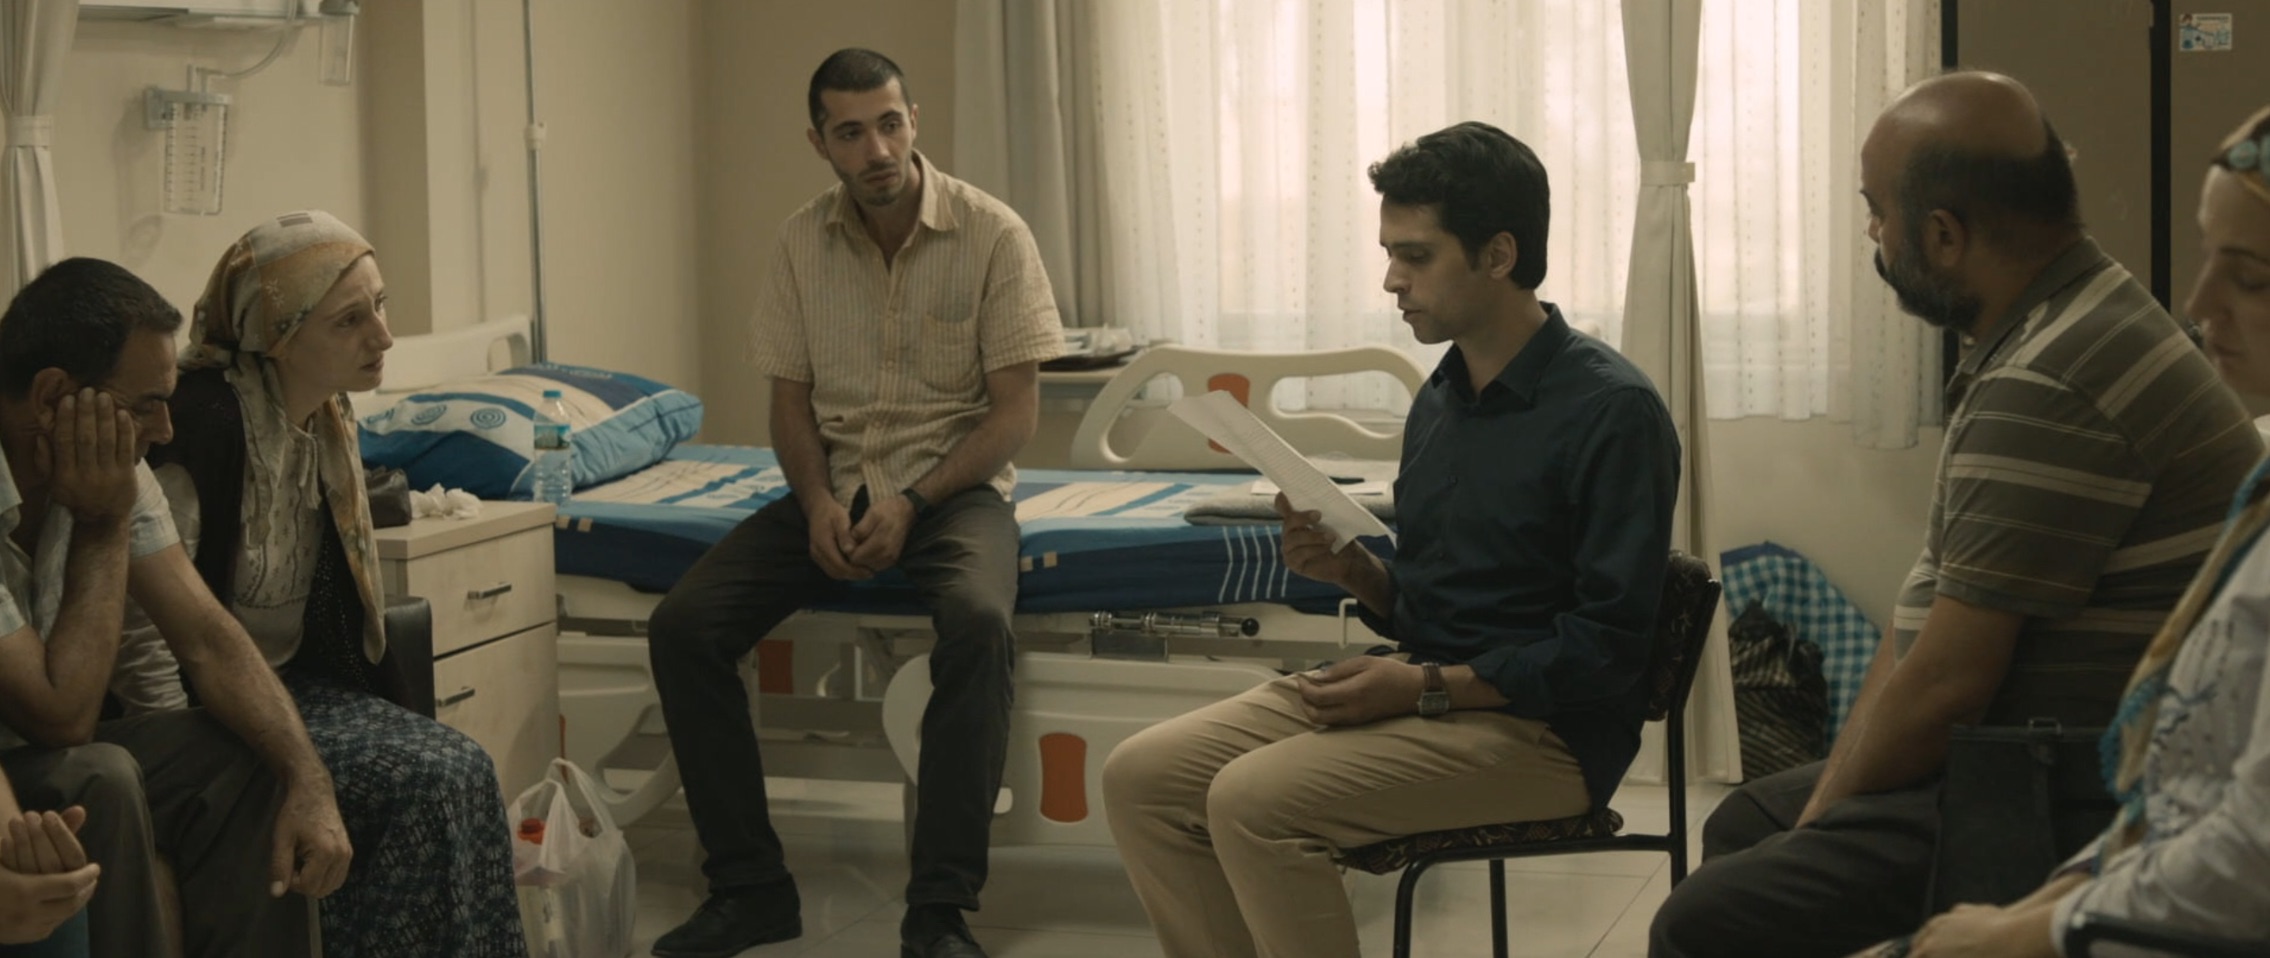 Selman Nacar İki Şafak Arasında 39. Torino Film Festivali En İyi Film Ödülü